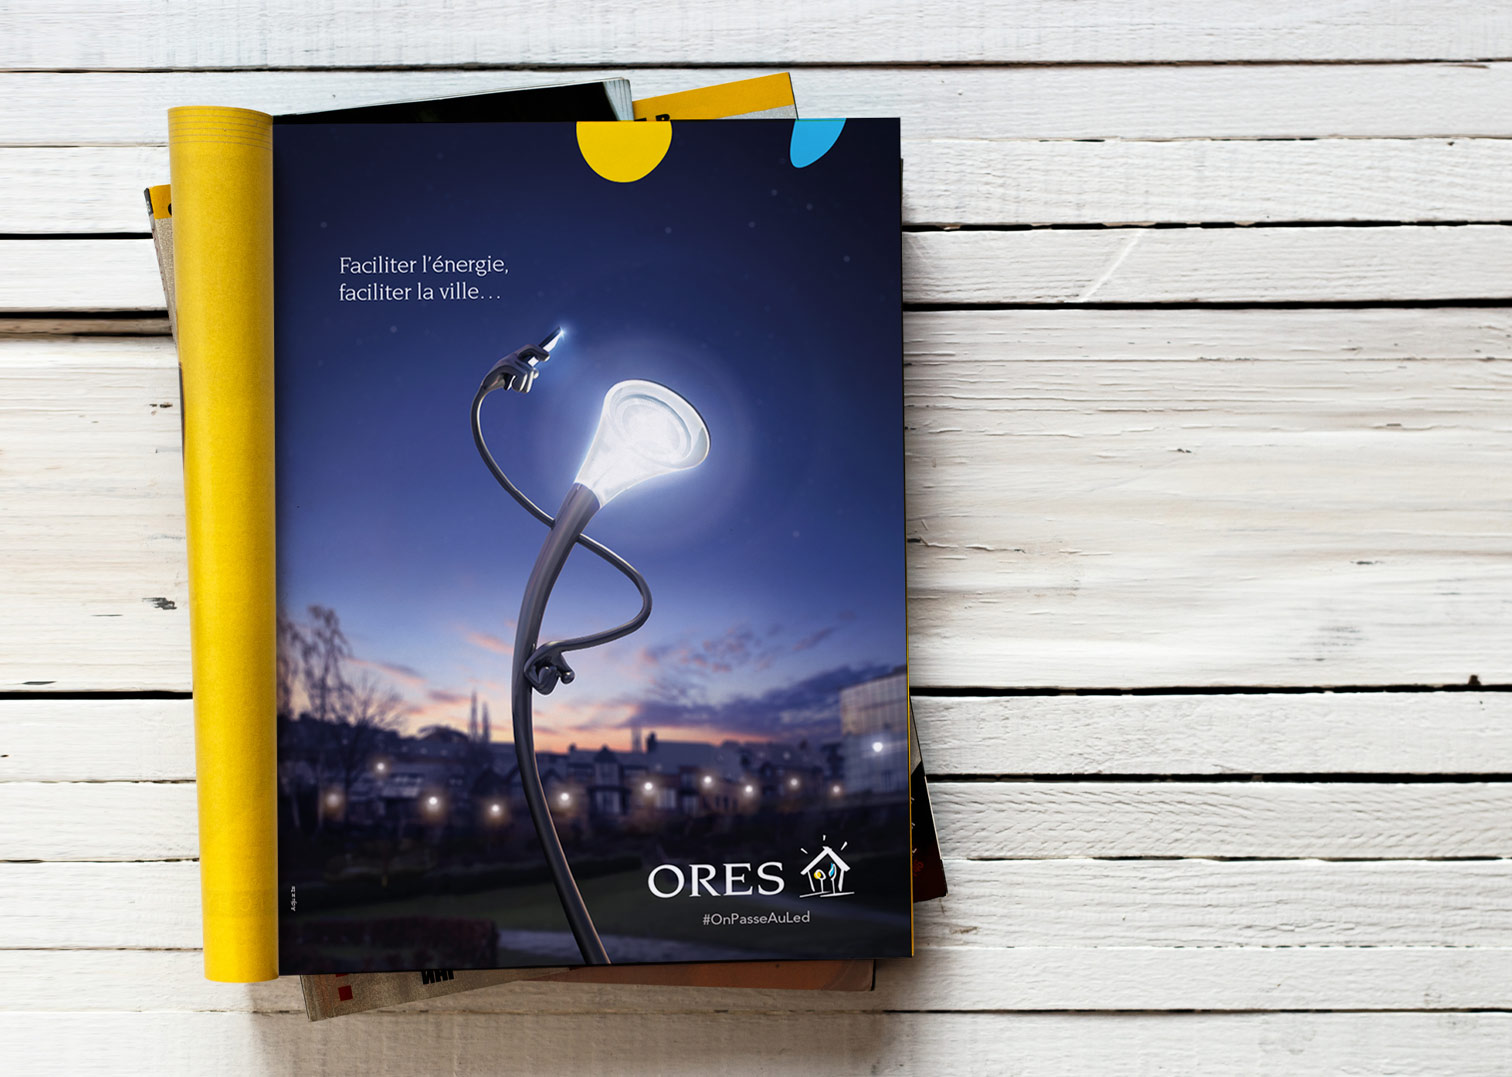 Magazine containing ORES' new design